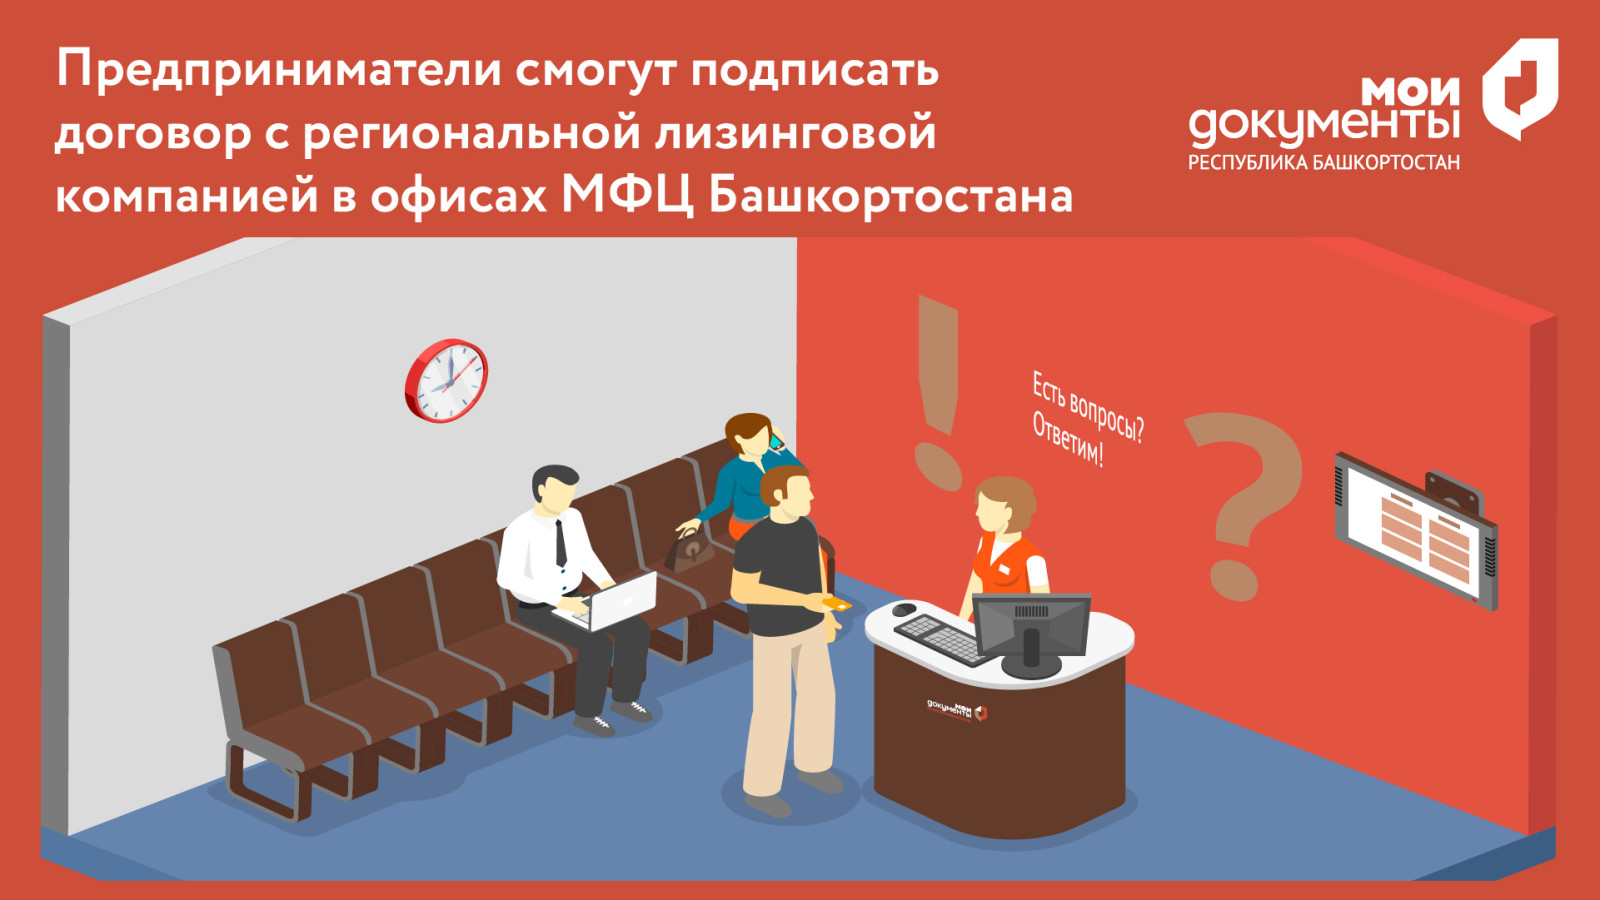 Предприниматели смогут подписать договор с региональной лизинговой компанией в офисах МФЦ Башкортостана